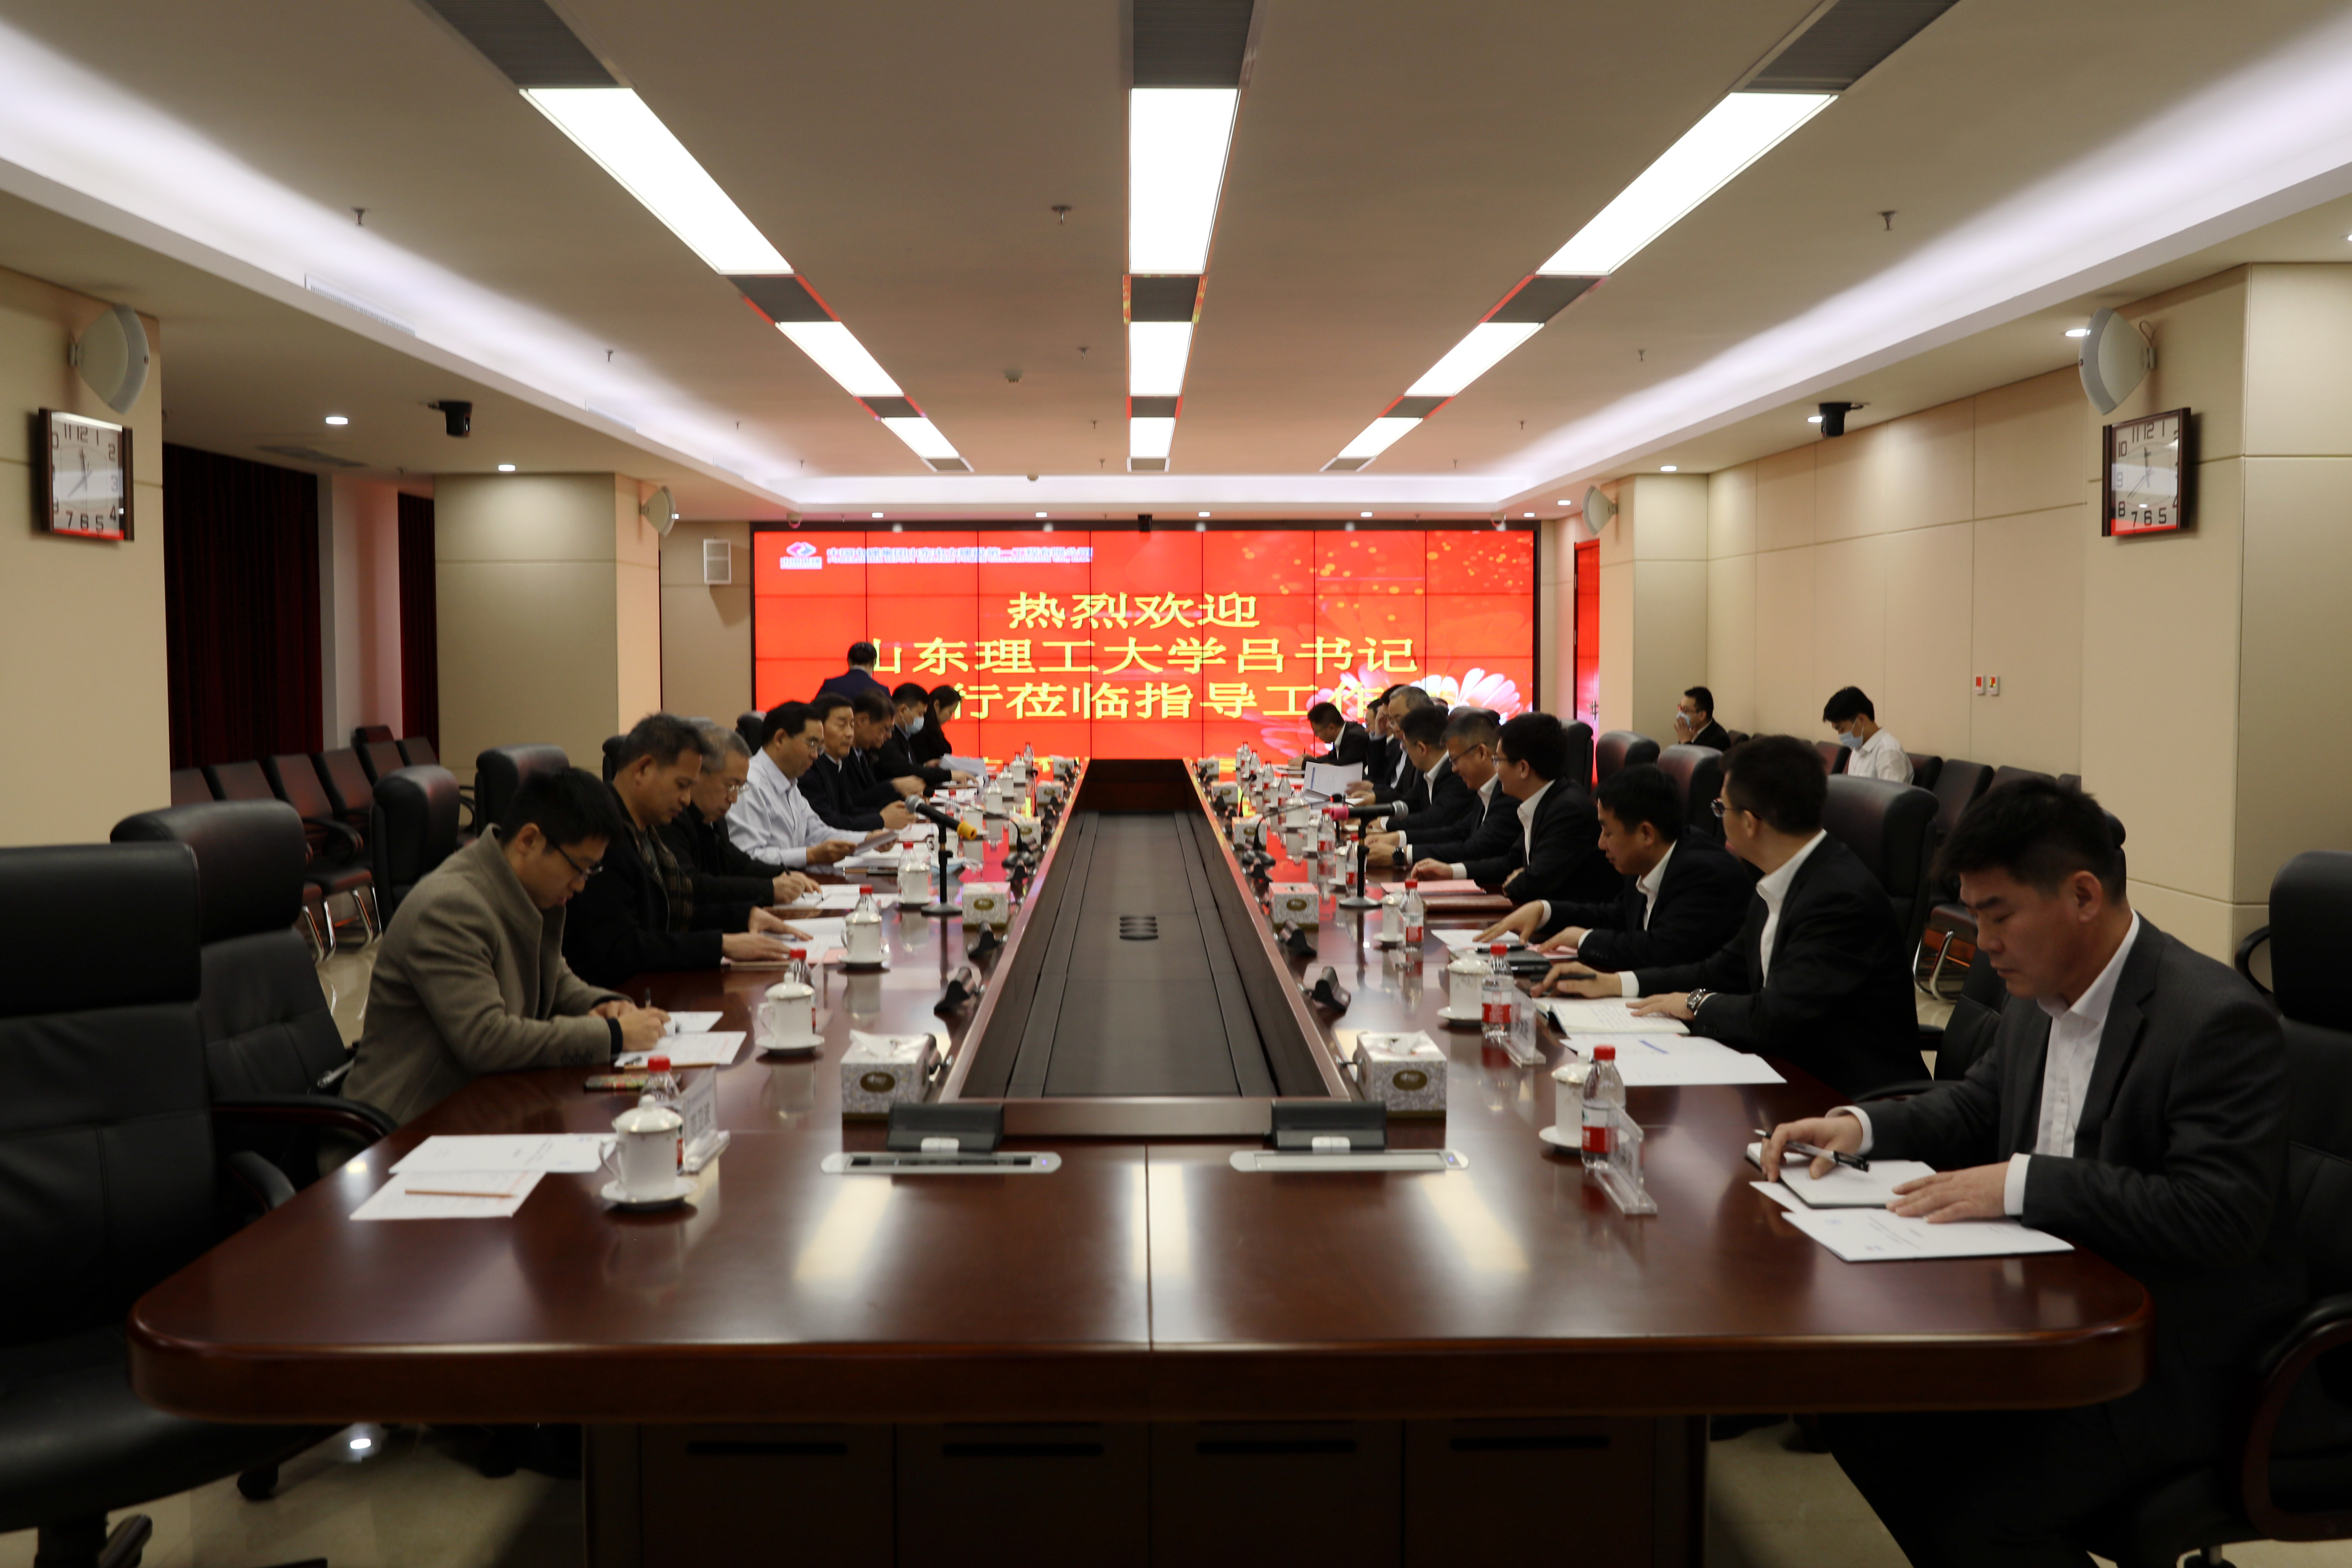 山東理工大學與山東電建第一公司簽約共建中國電建山東產業學院